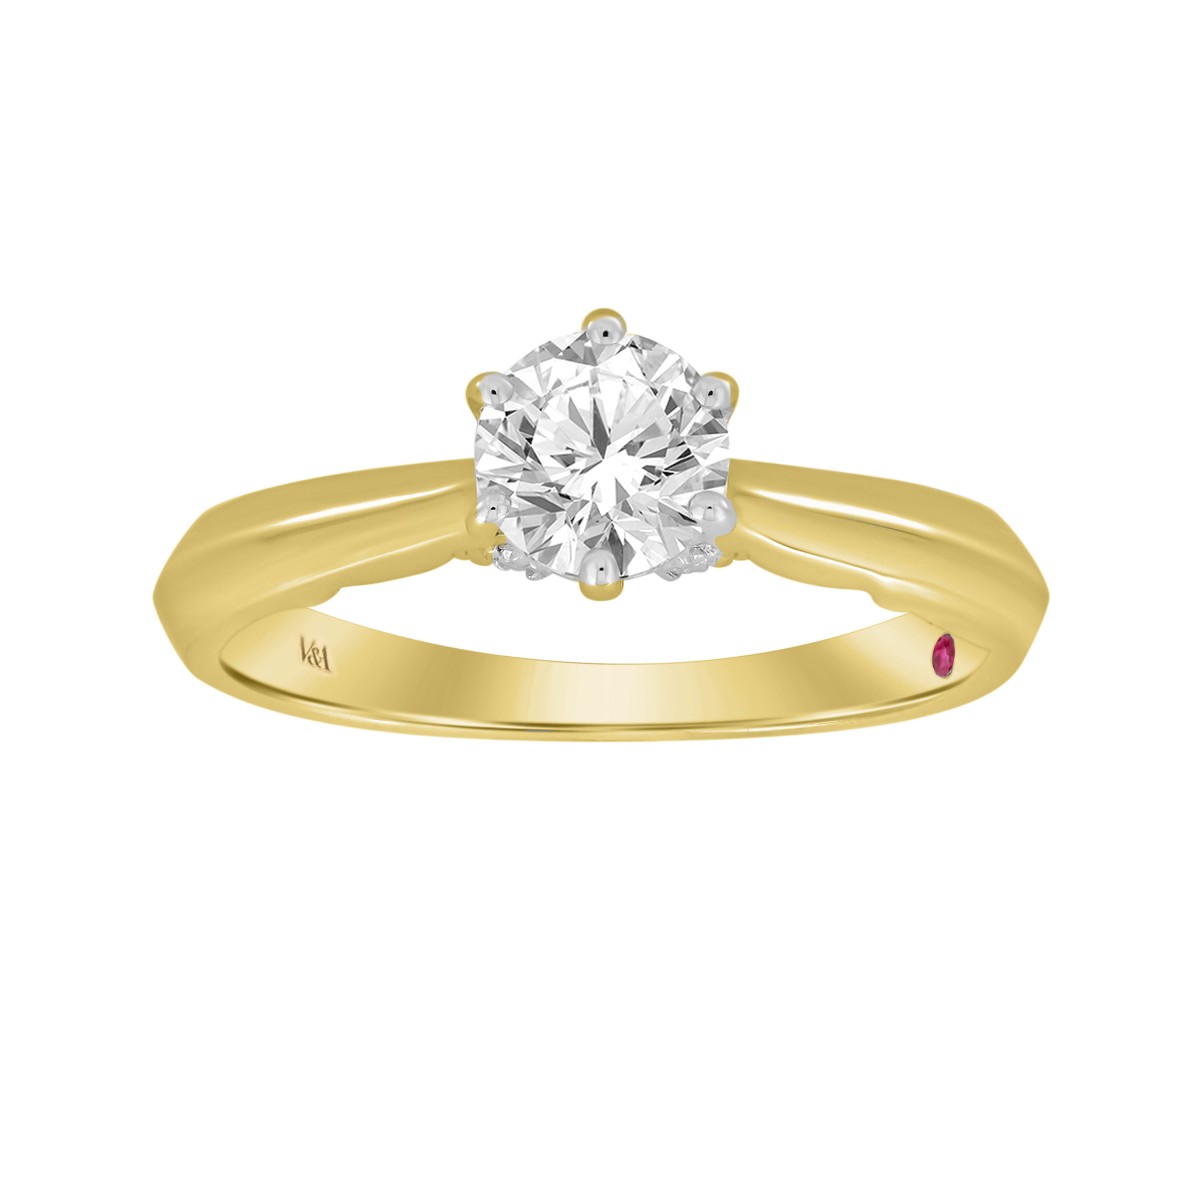 18K YELLOW GOLD 1CT ROUND DIAMOND LADIES RING( CENTER STONE ROUND DIAMOND 7/8 CT)